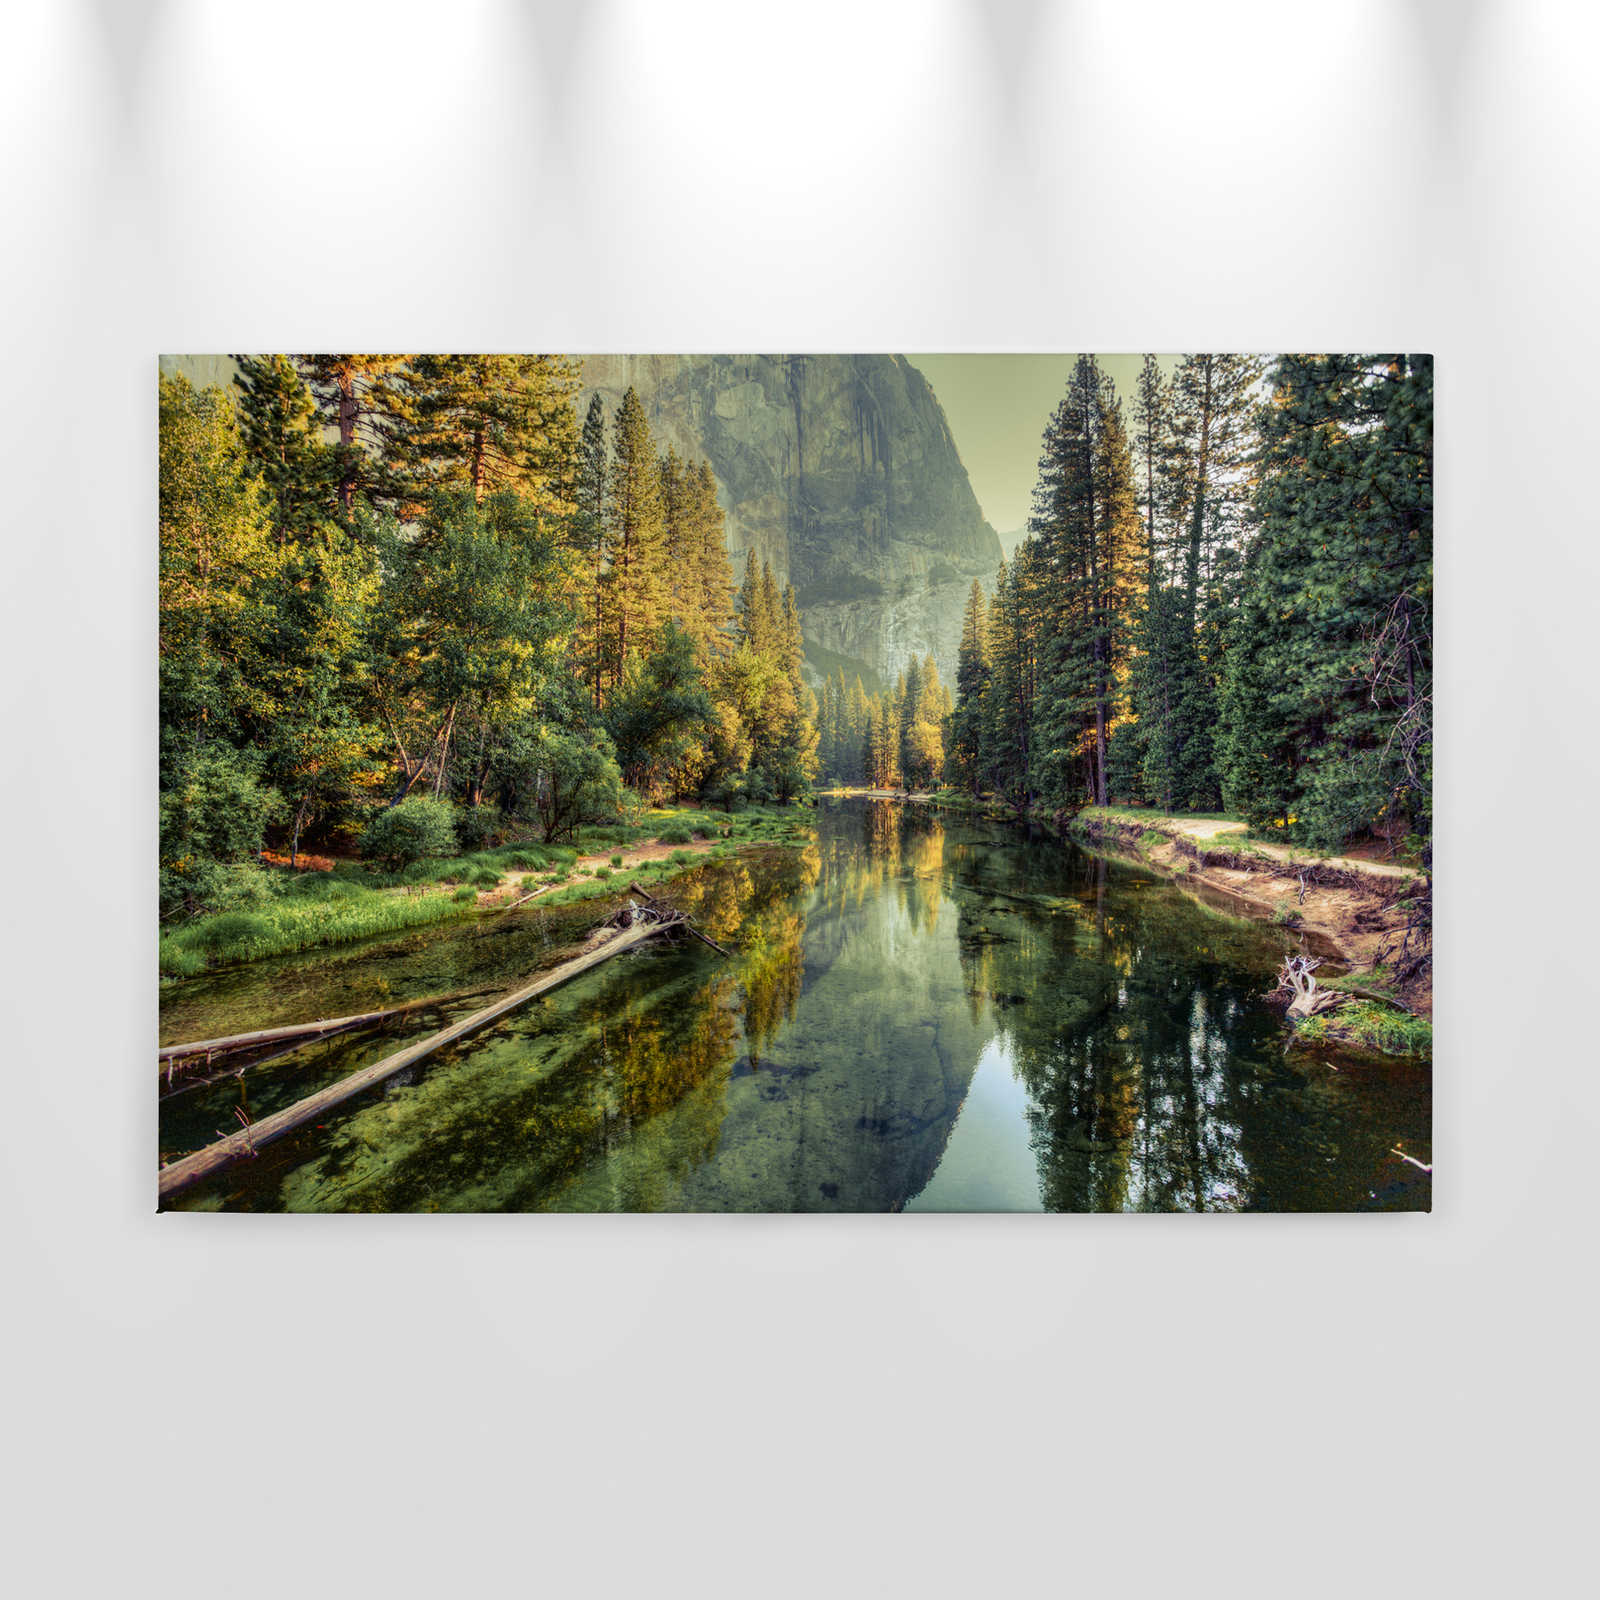             Canvas met rivier aan de voet van een berg - 0.90 m x 0.60 m
        